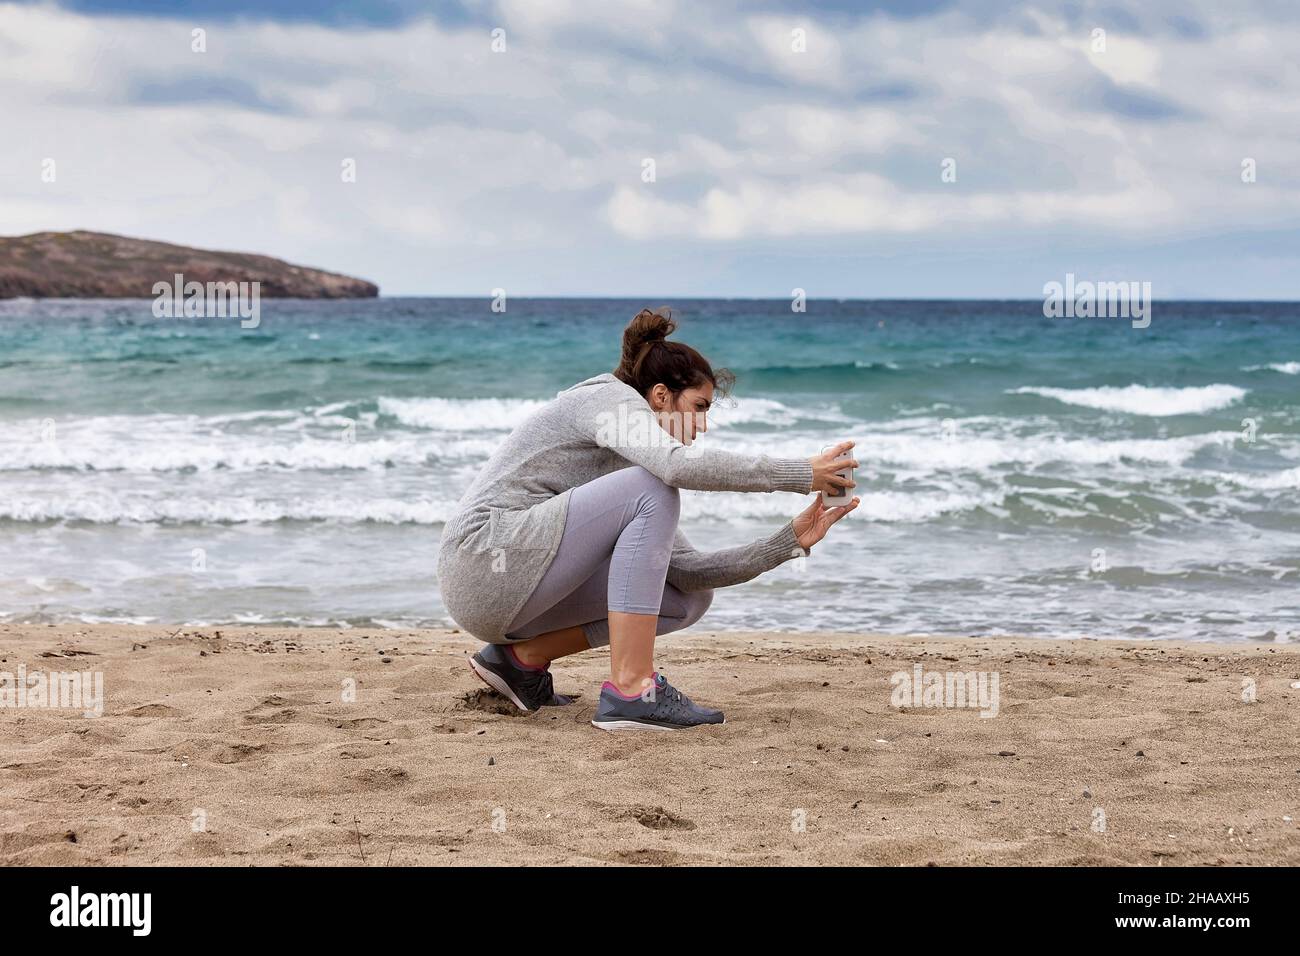 Frau, die ein Foto gemacht hat. Junge Fotografin, die sich am Sandstrand beugte und mit dem Smartphone eine Meeresaufnahme machte. Stockbild, Stockfoto